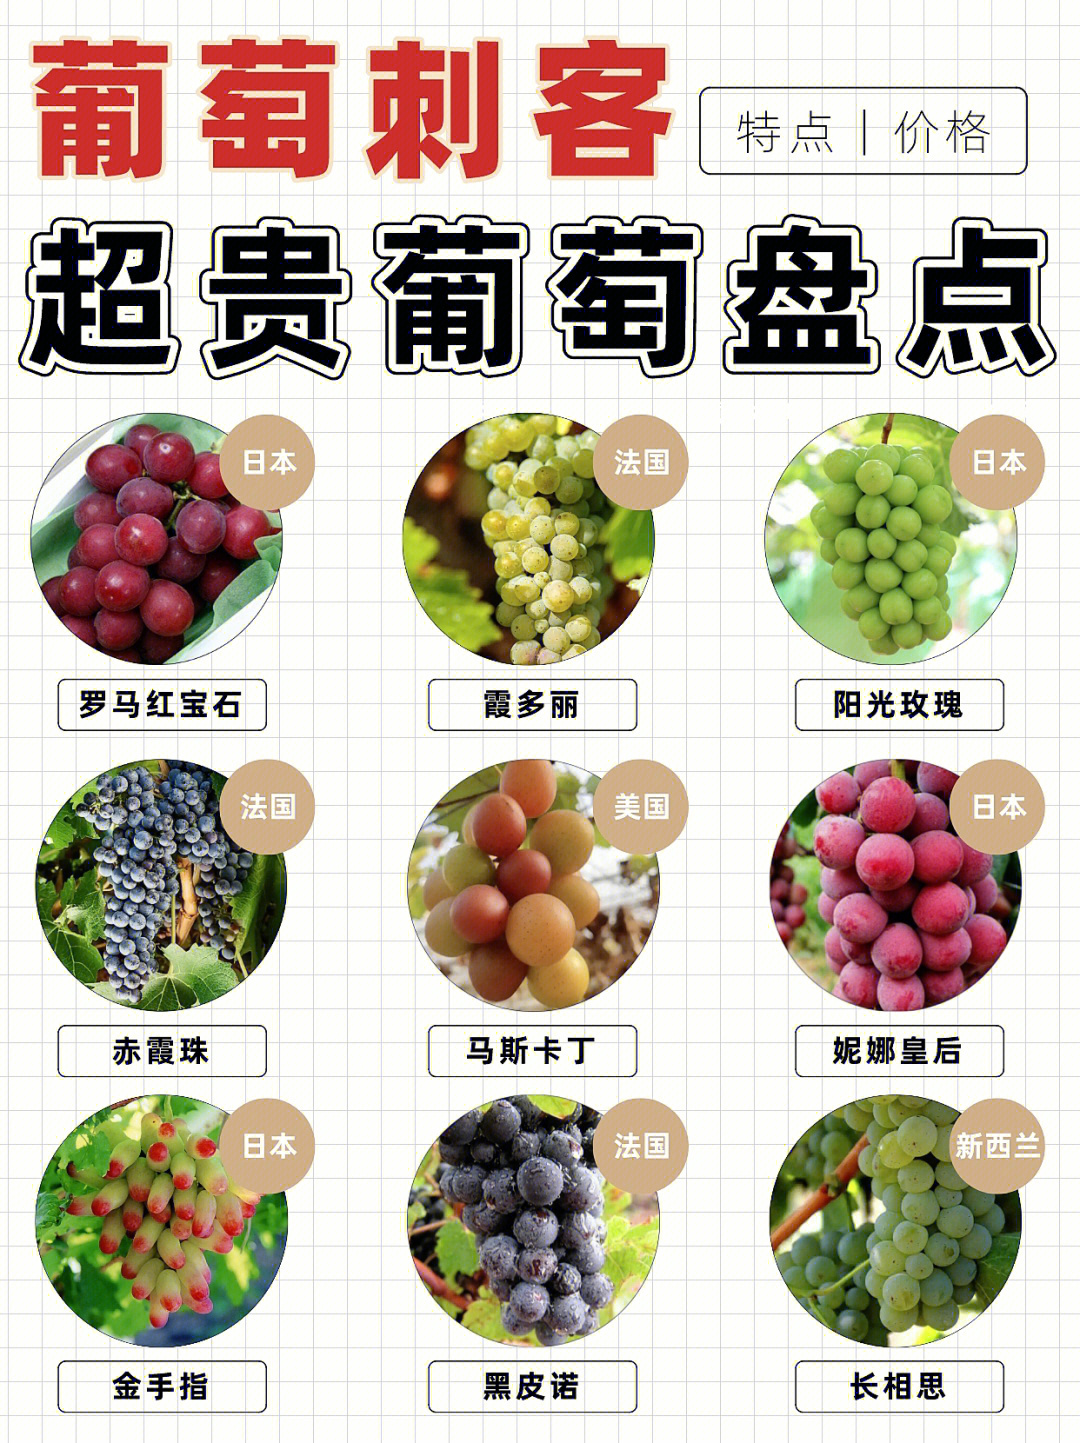 18大葡萄品种介绍图片图片